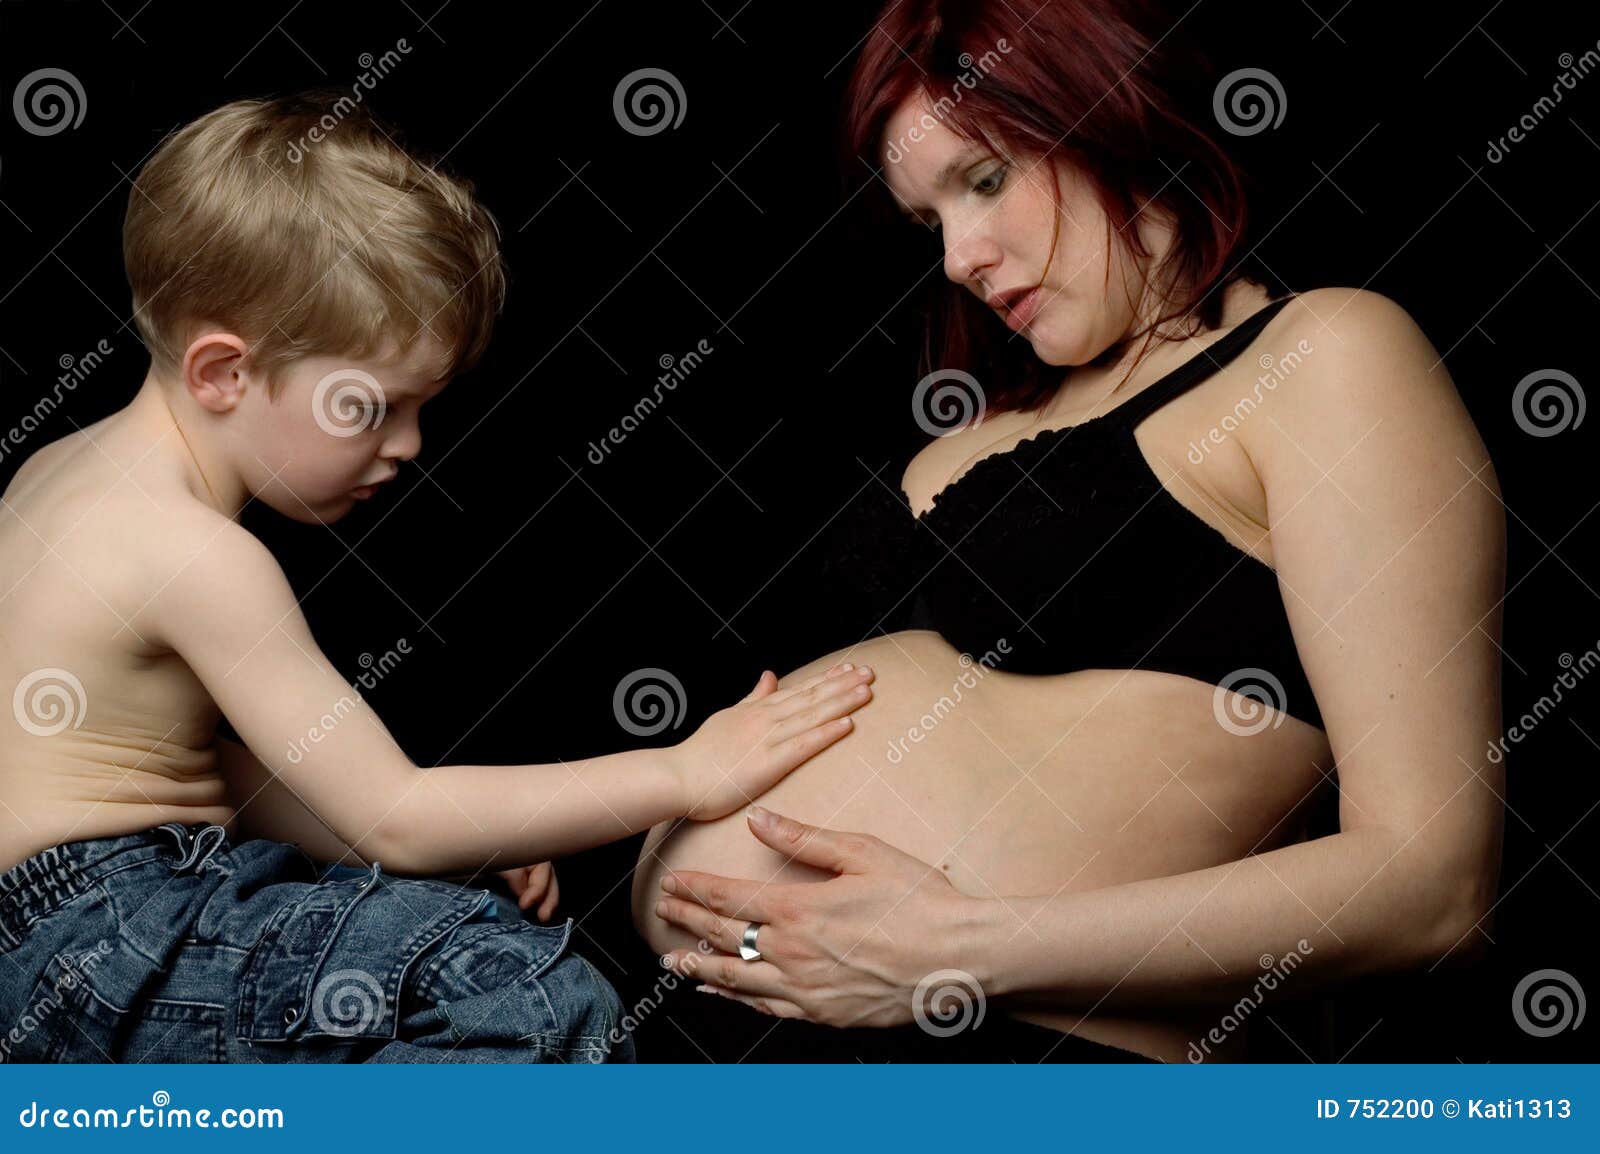 сын гладит у мамы груди фото 112